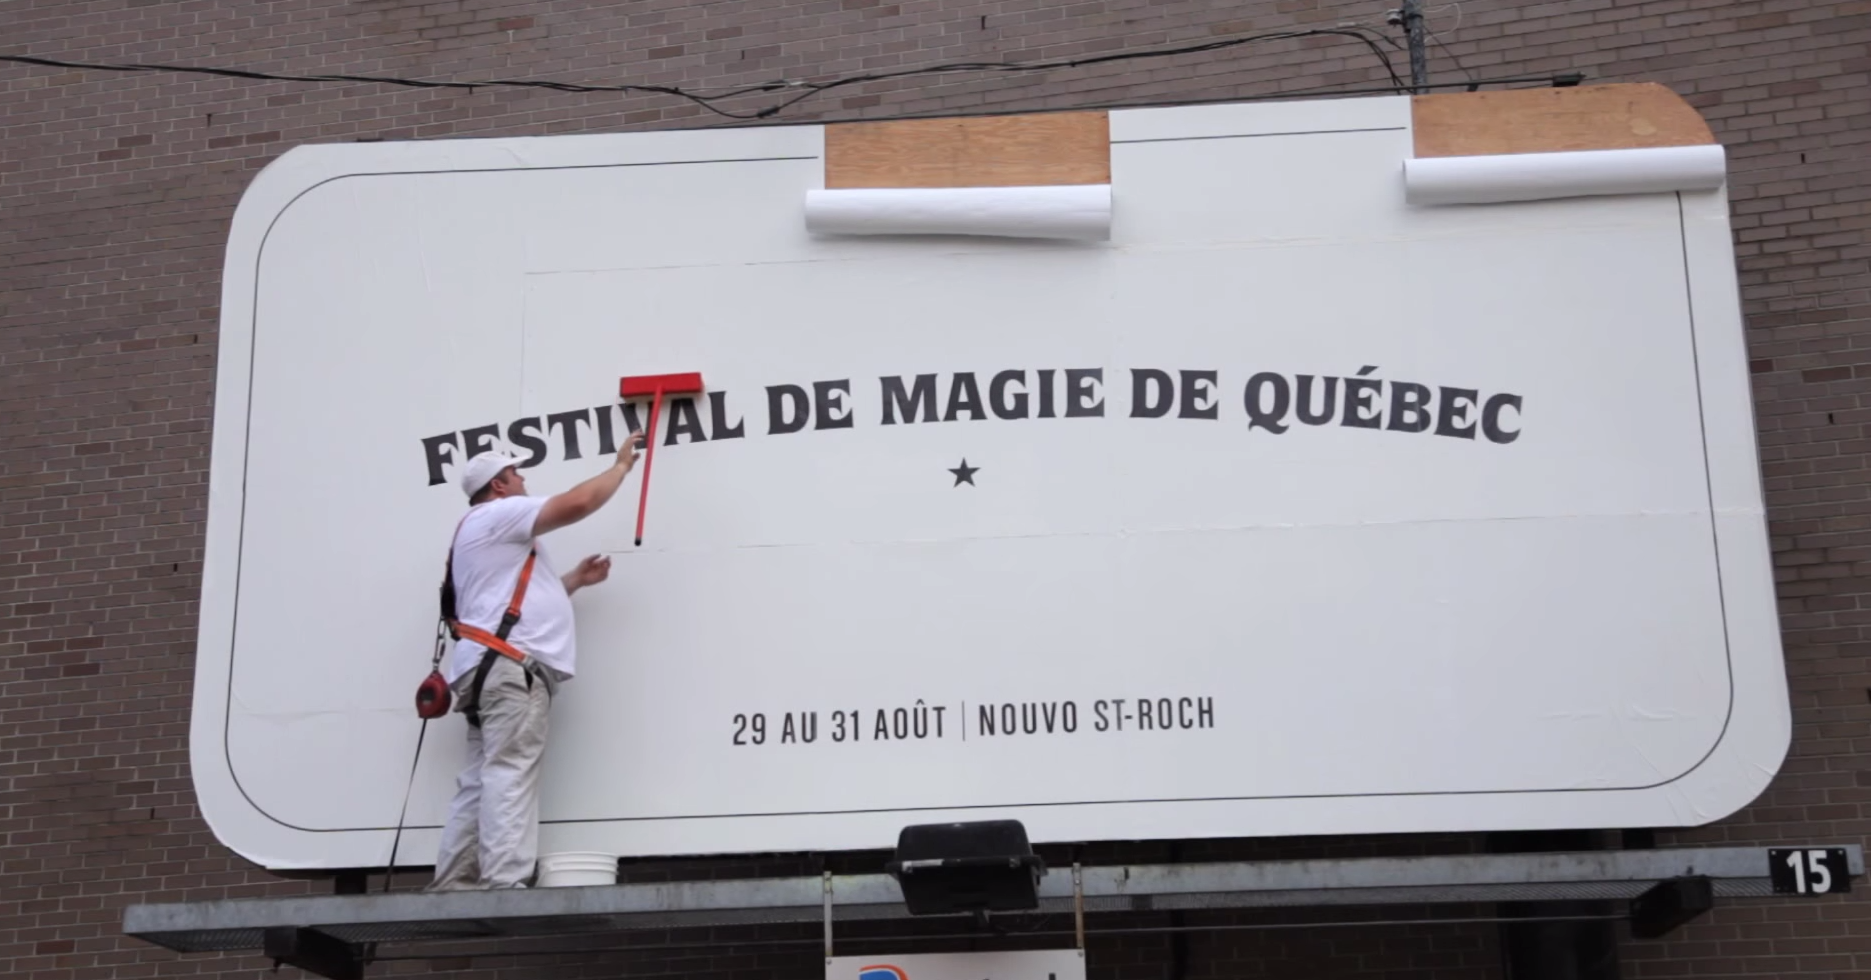 Brillante promo pour le Festival de magie de Québec